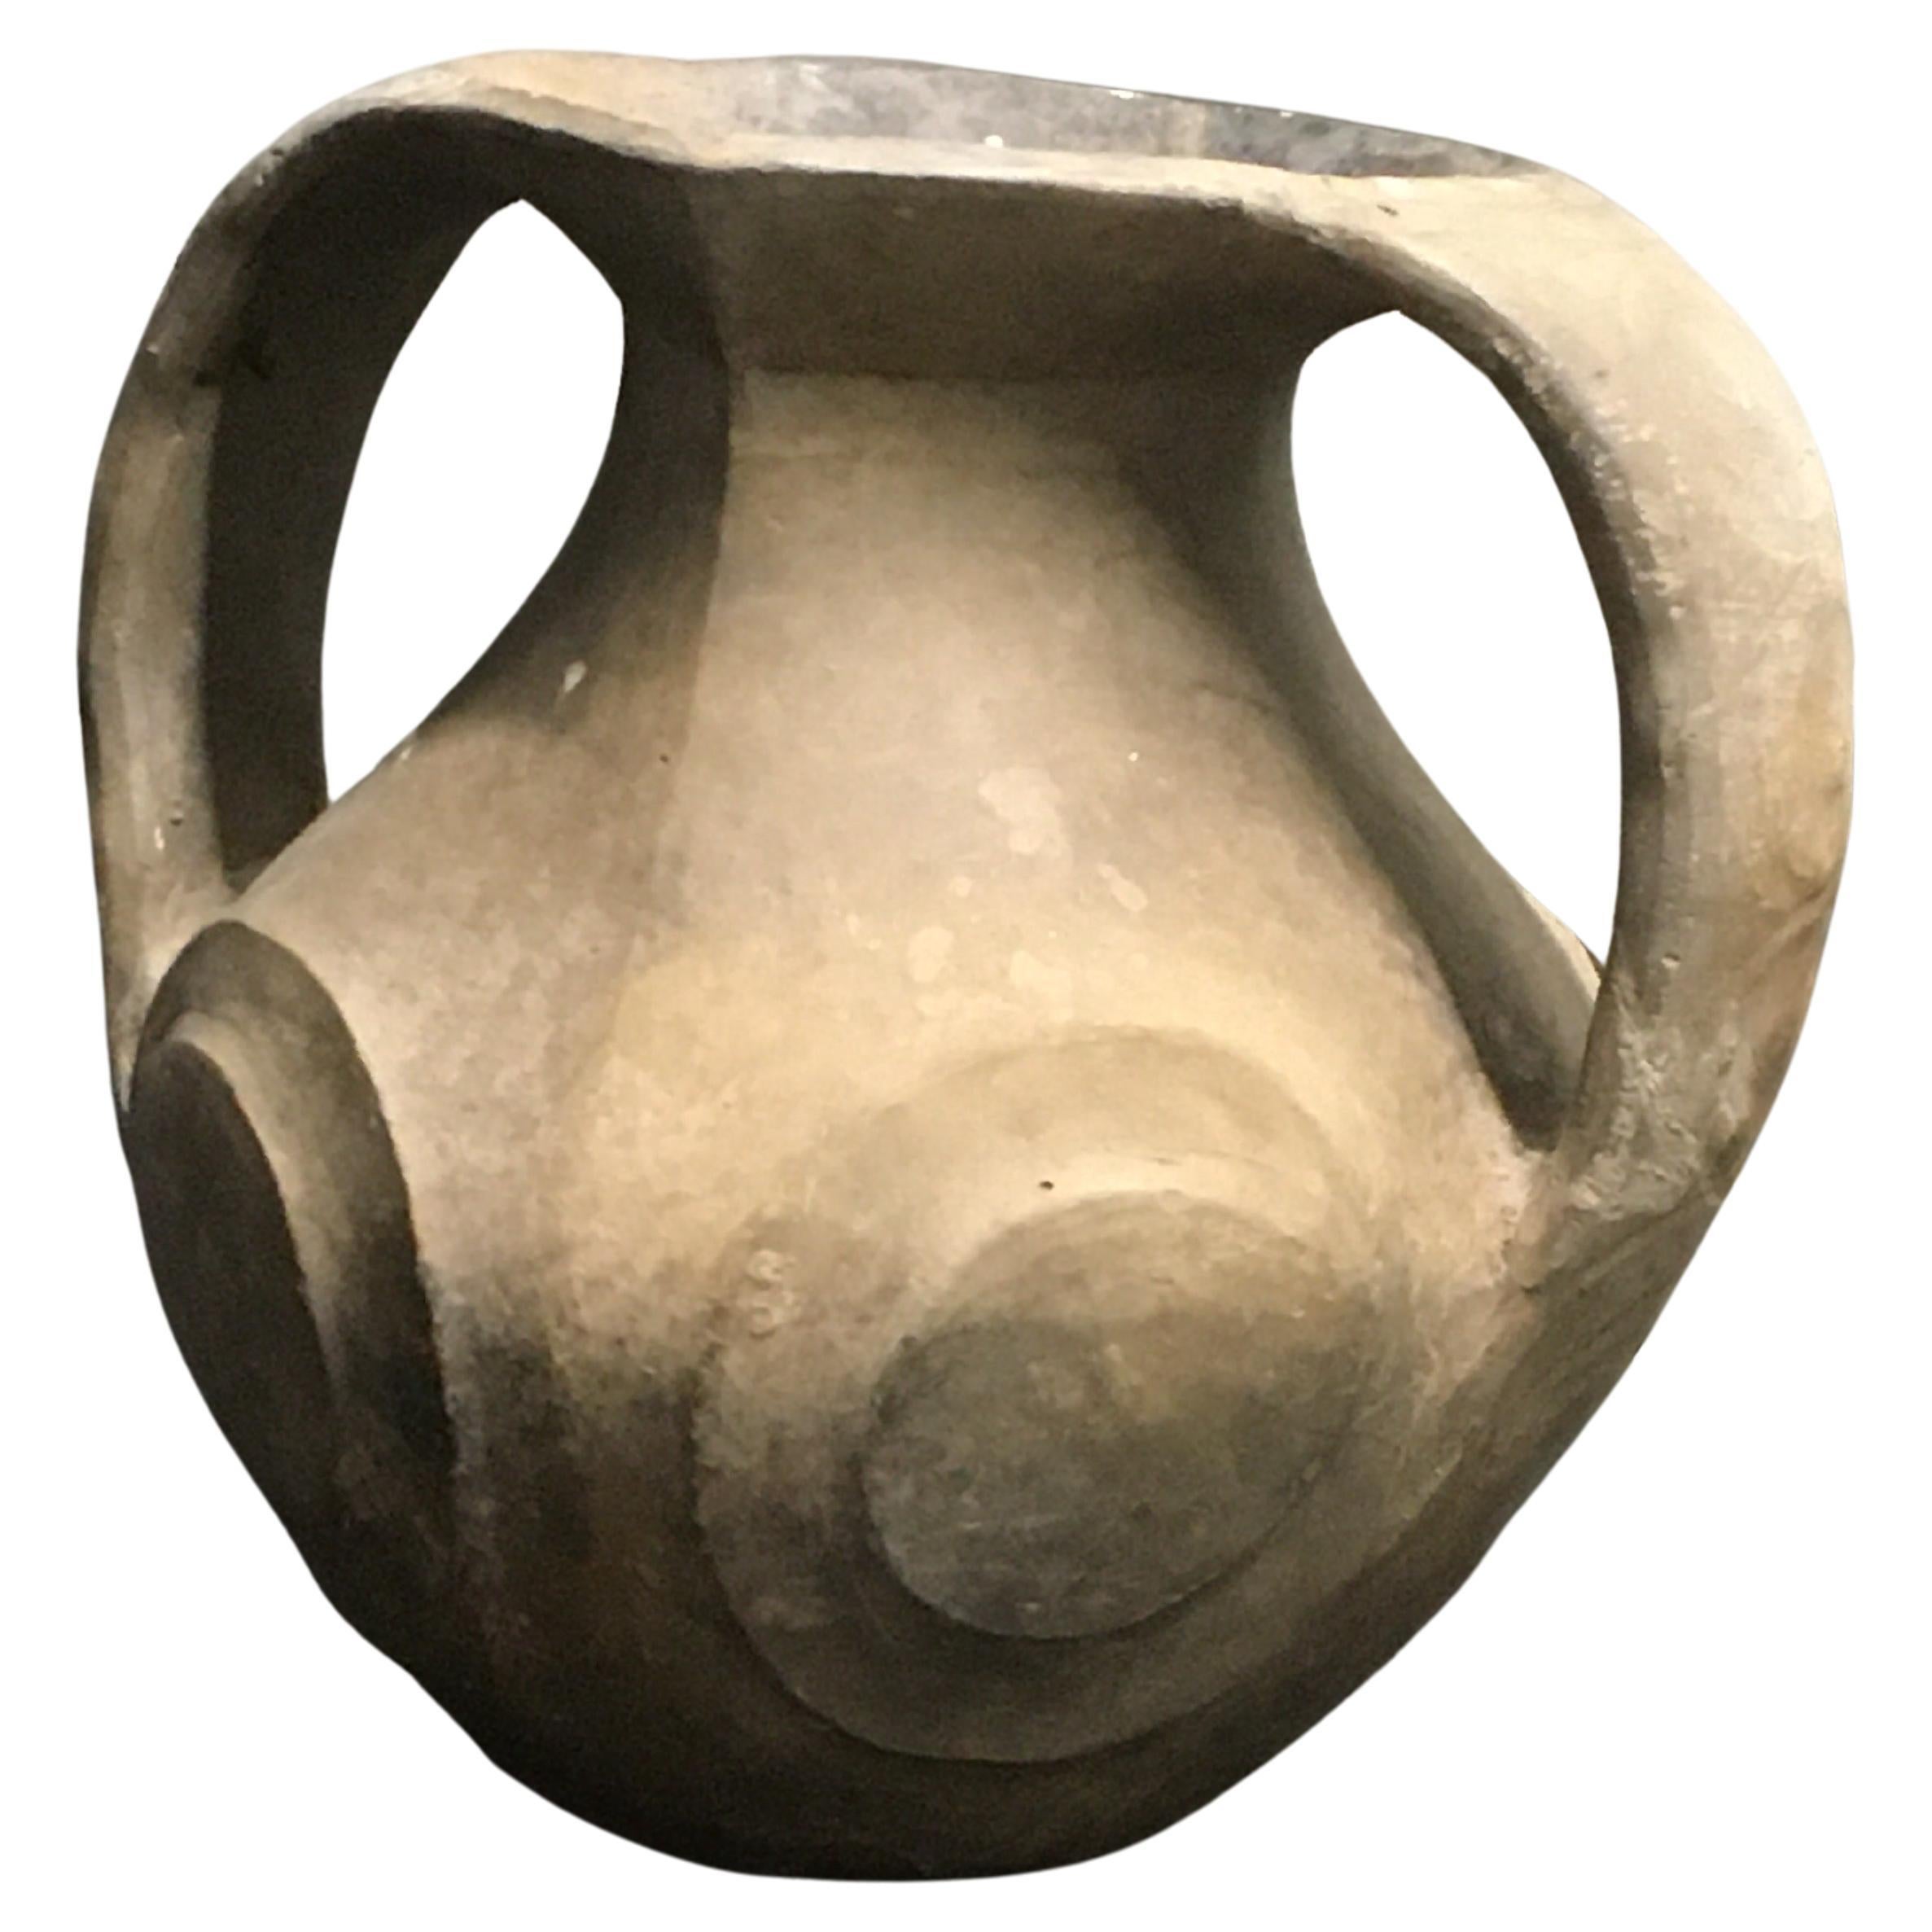 Sichuan Burnished Black Han Dynasty Pottery Amphora Vase For Sale